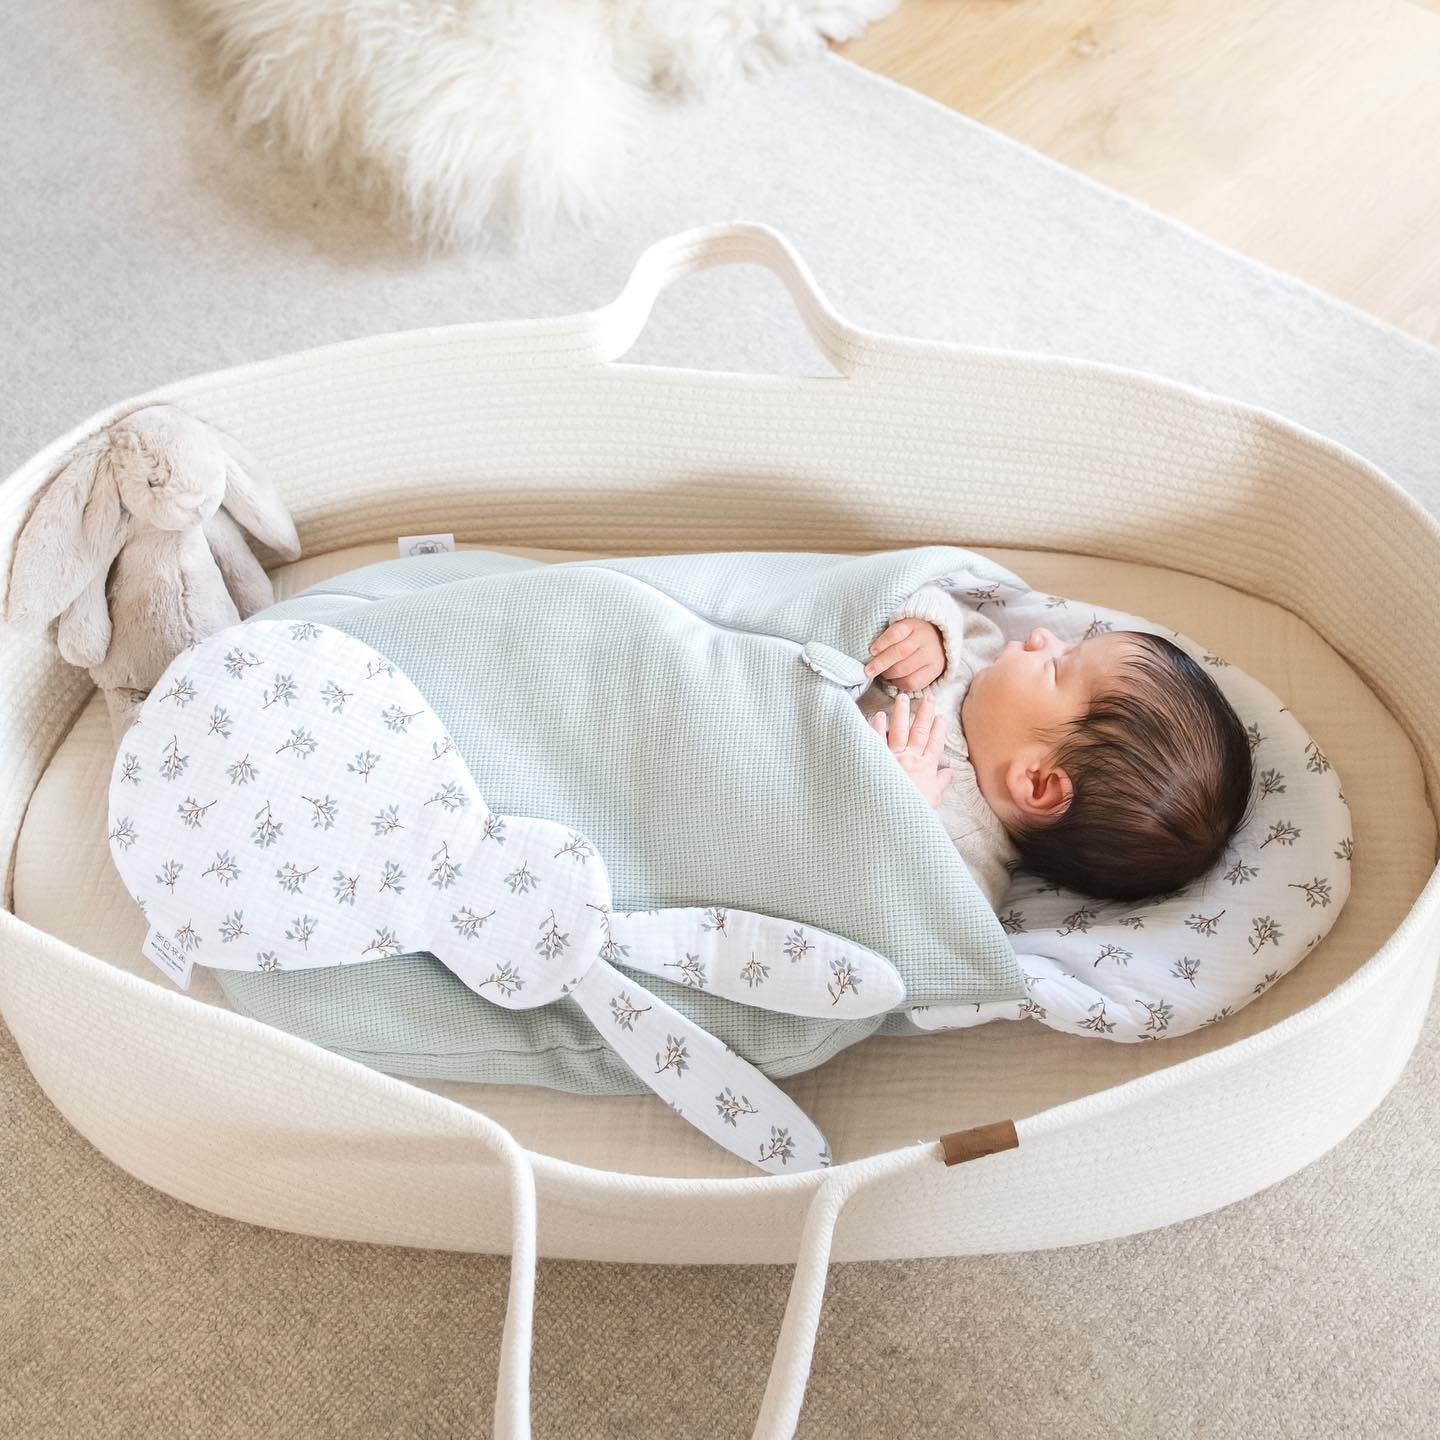 Comment créer un environnement de sommeil propice pour bébé ?